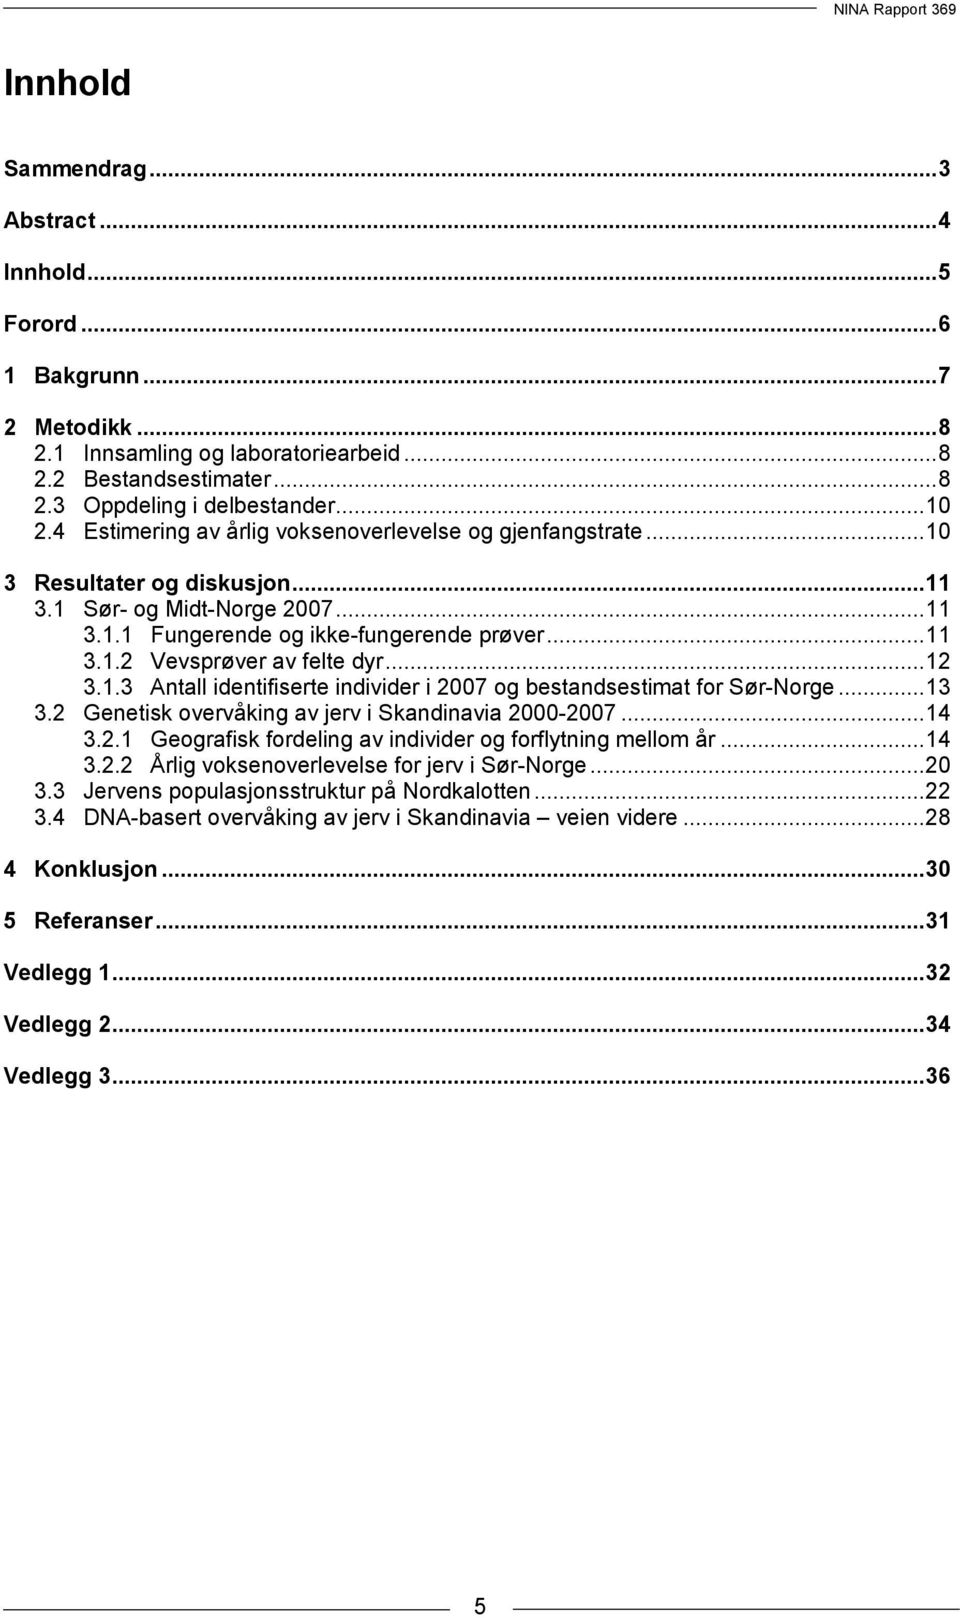 ..12 3.1.3 Antall identifiserte individer i 2007 og bestandsestimat for Sør-Norge...13 3.2 Genetisk overvåking av jerv i Skandinavia 2000-2007...14 3.2.1 Geografisk fordeling av individer og forflytning mellom år.